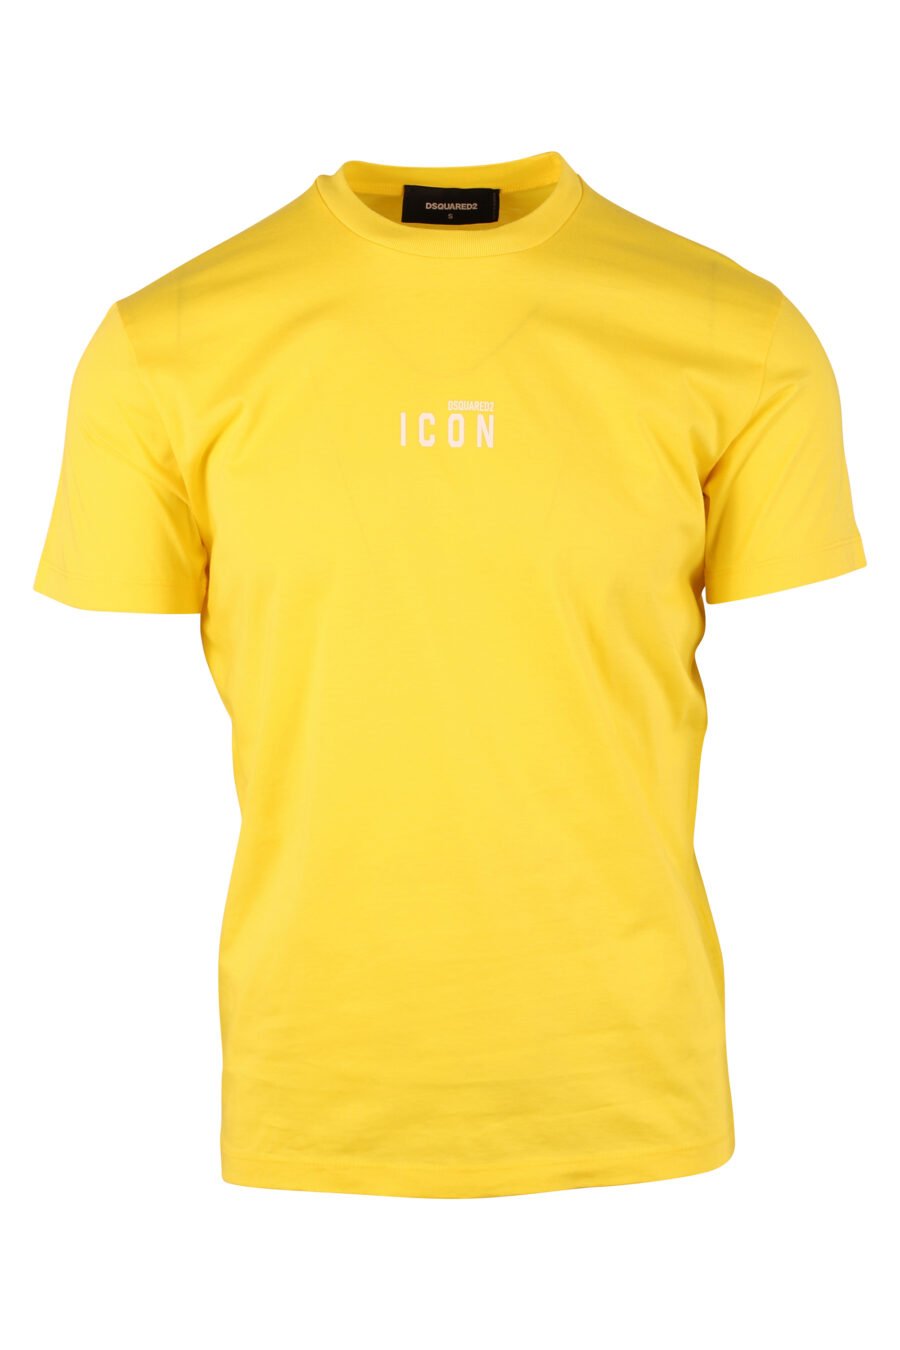 Camiseta amarilla con minilogo "icon" - IMG 9739